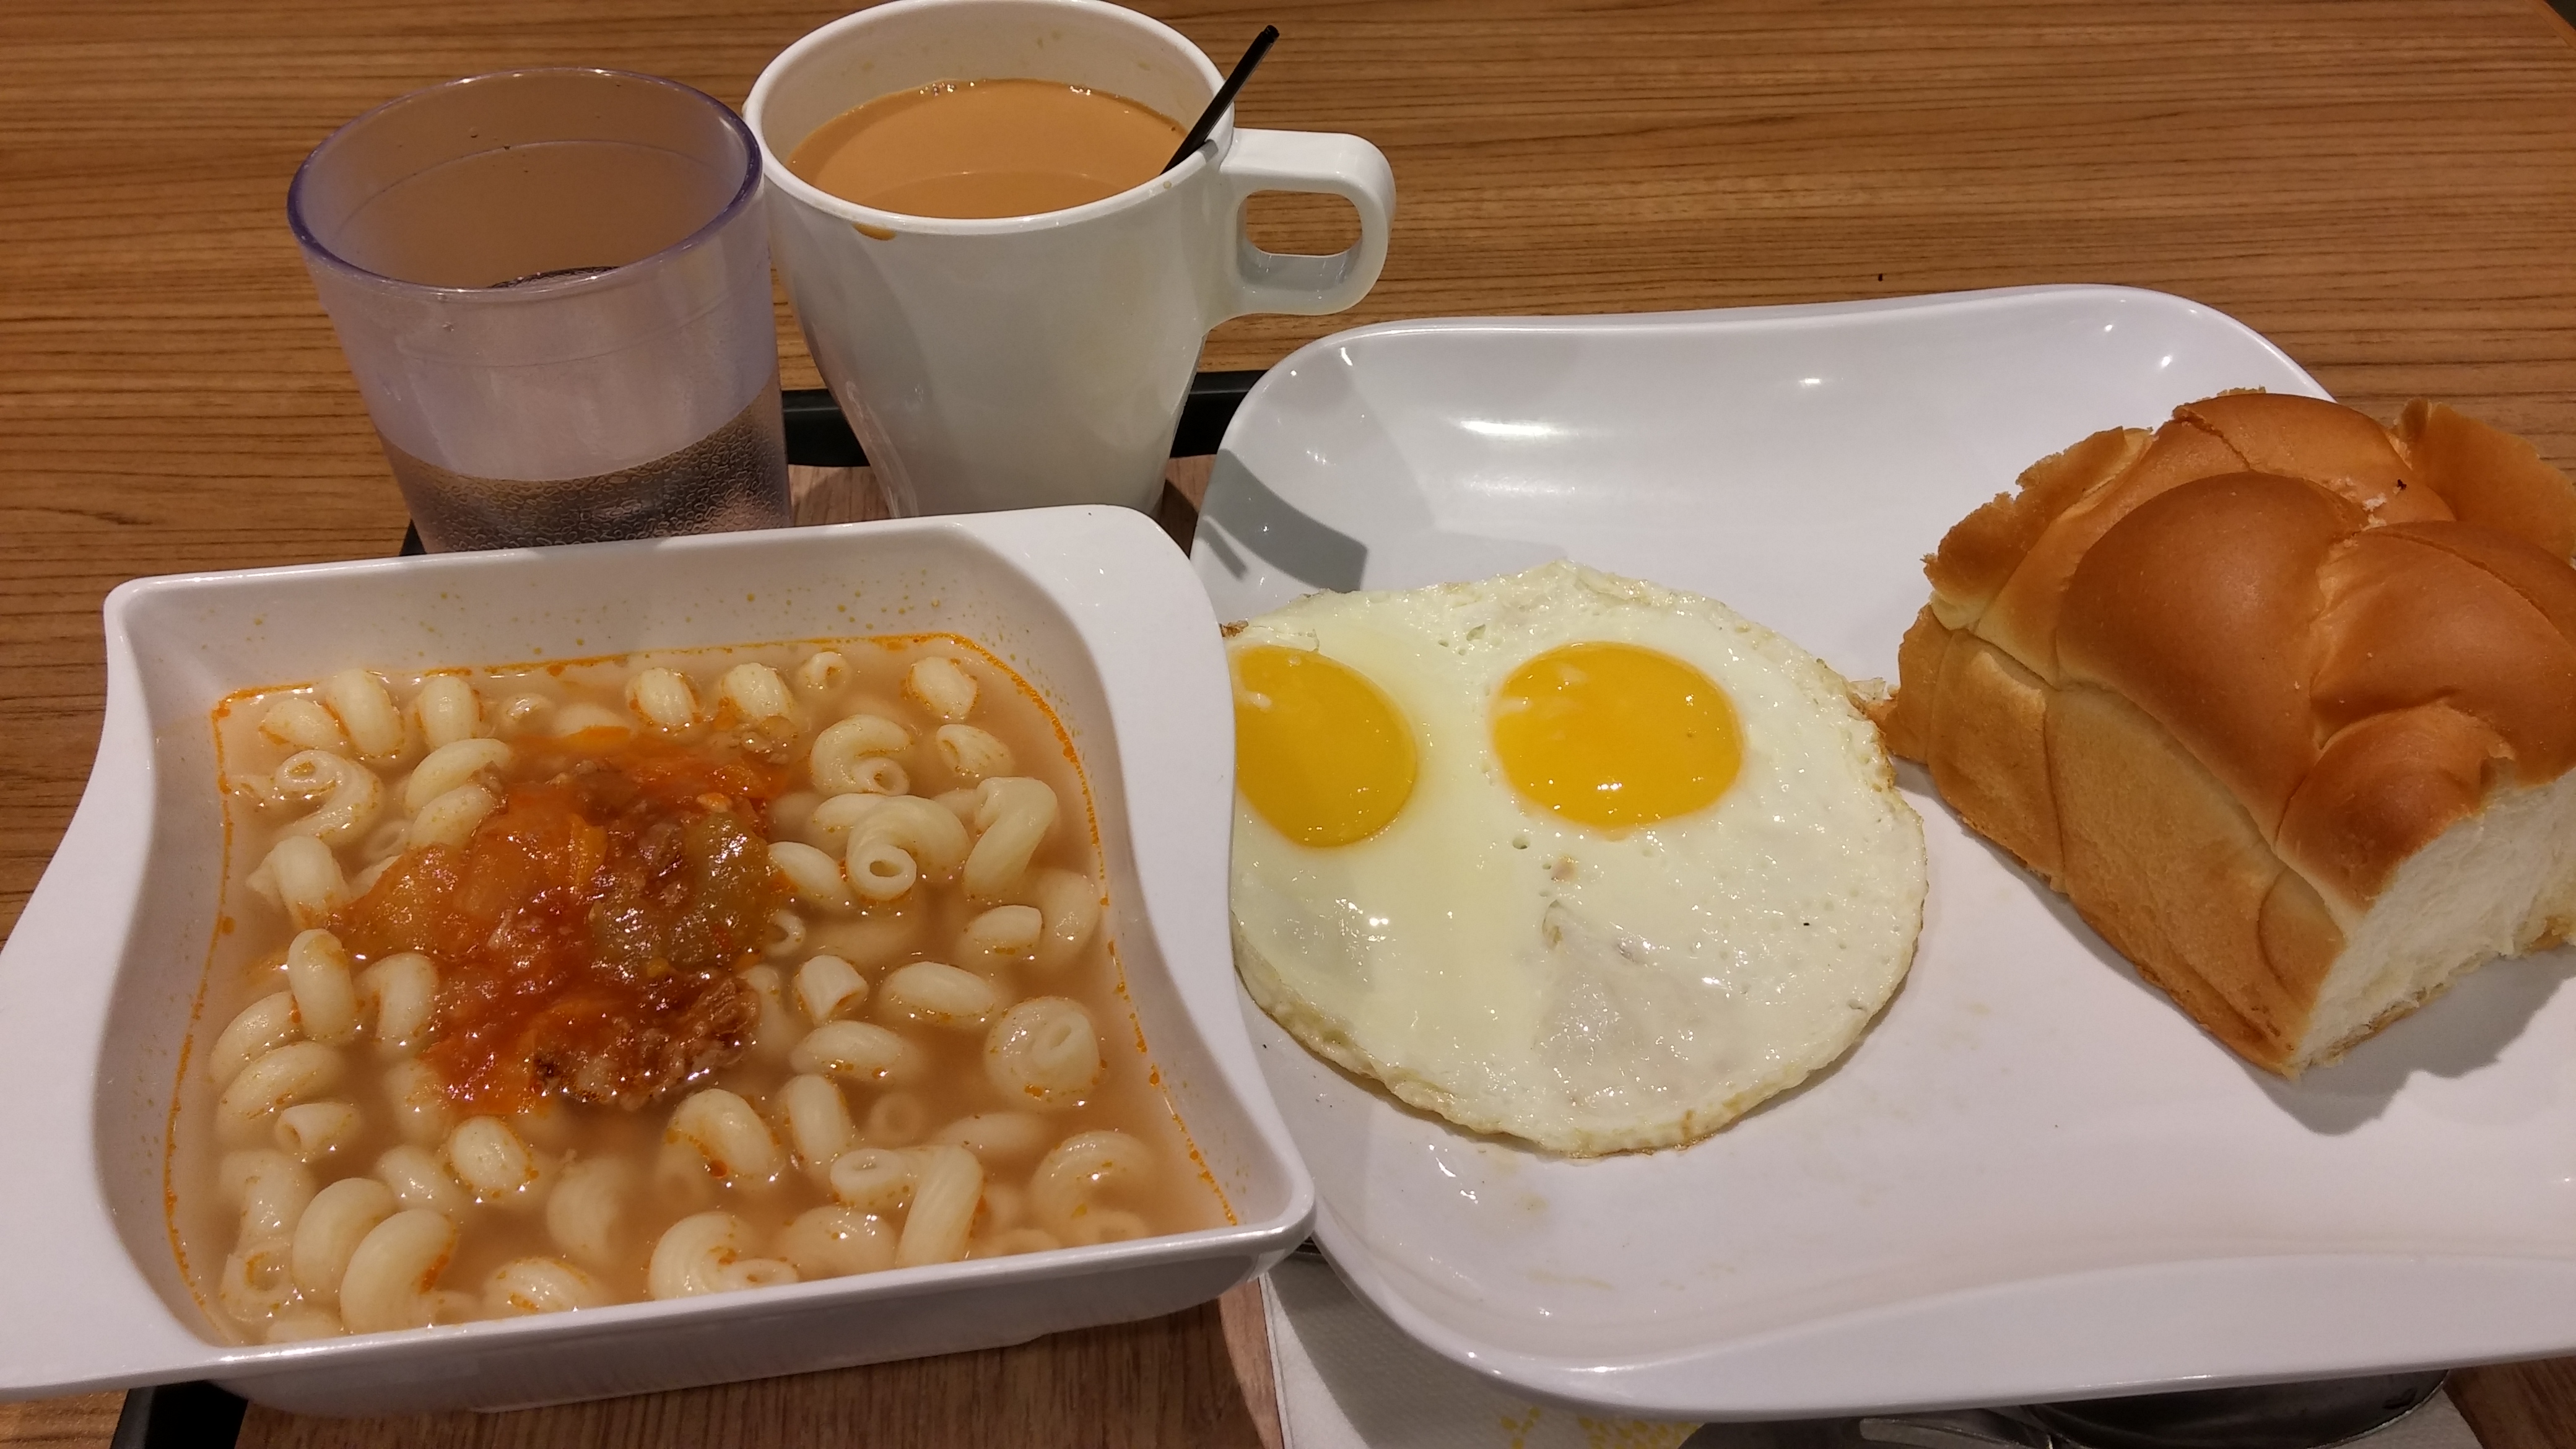 Enjoy breakfast at Hong Kong fast food shop